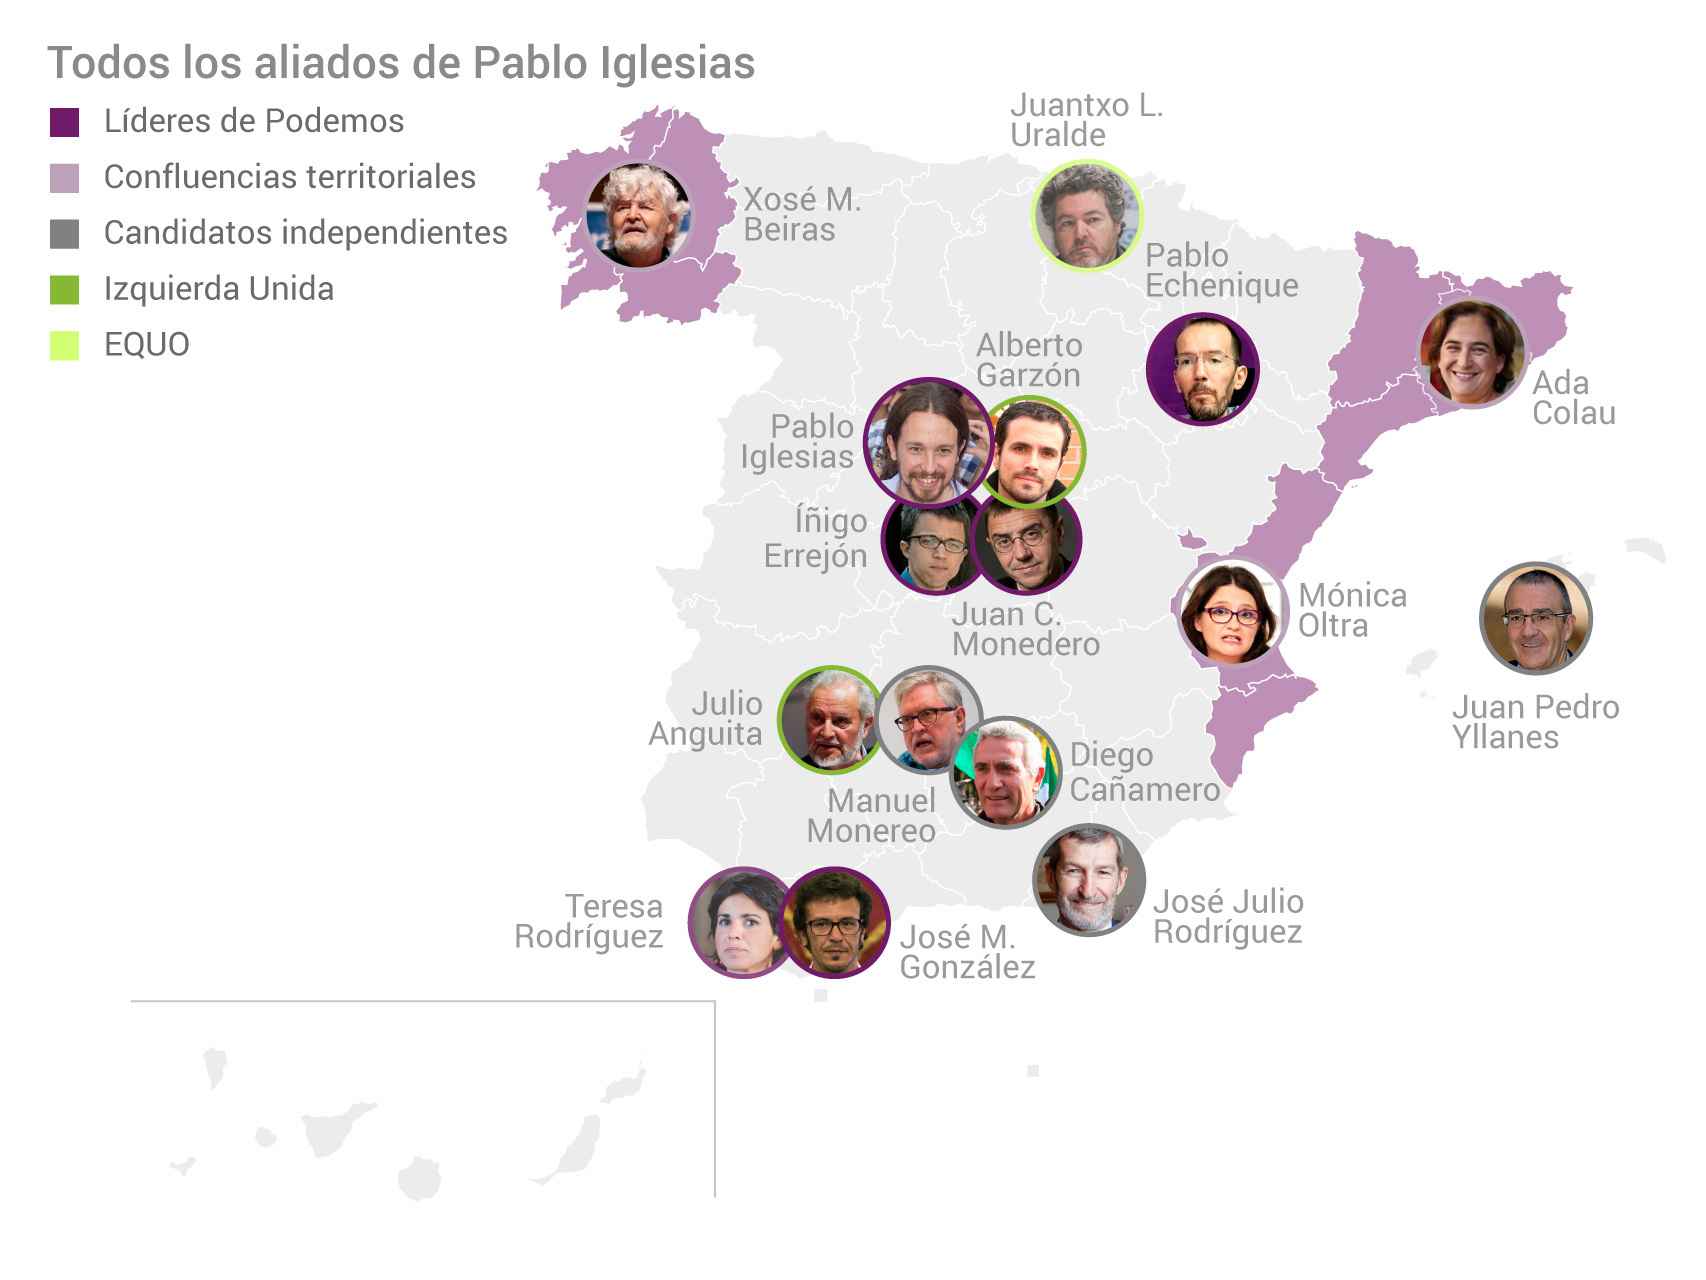 Pablo Iglesias cuenta con numerosos apoyos en estas elecciones.